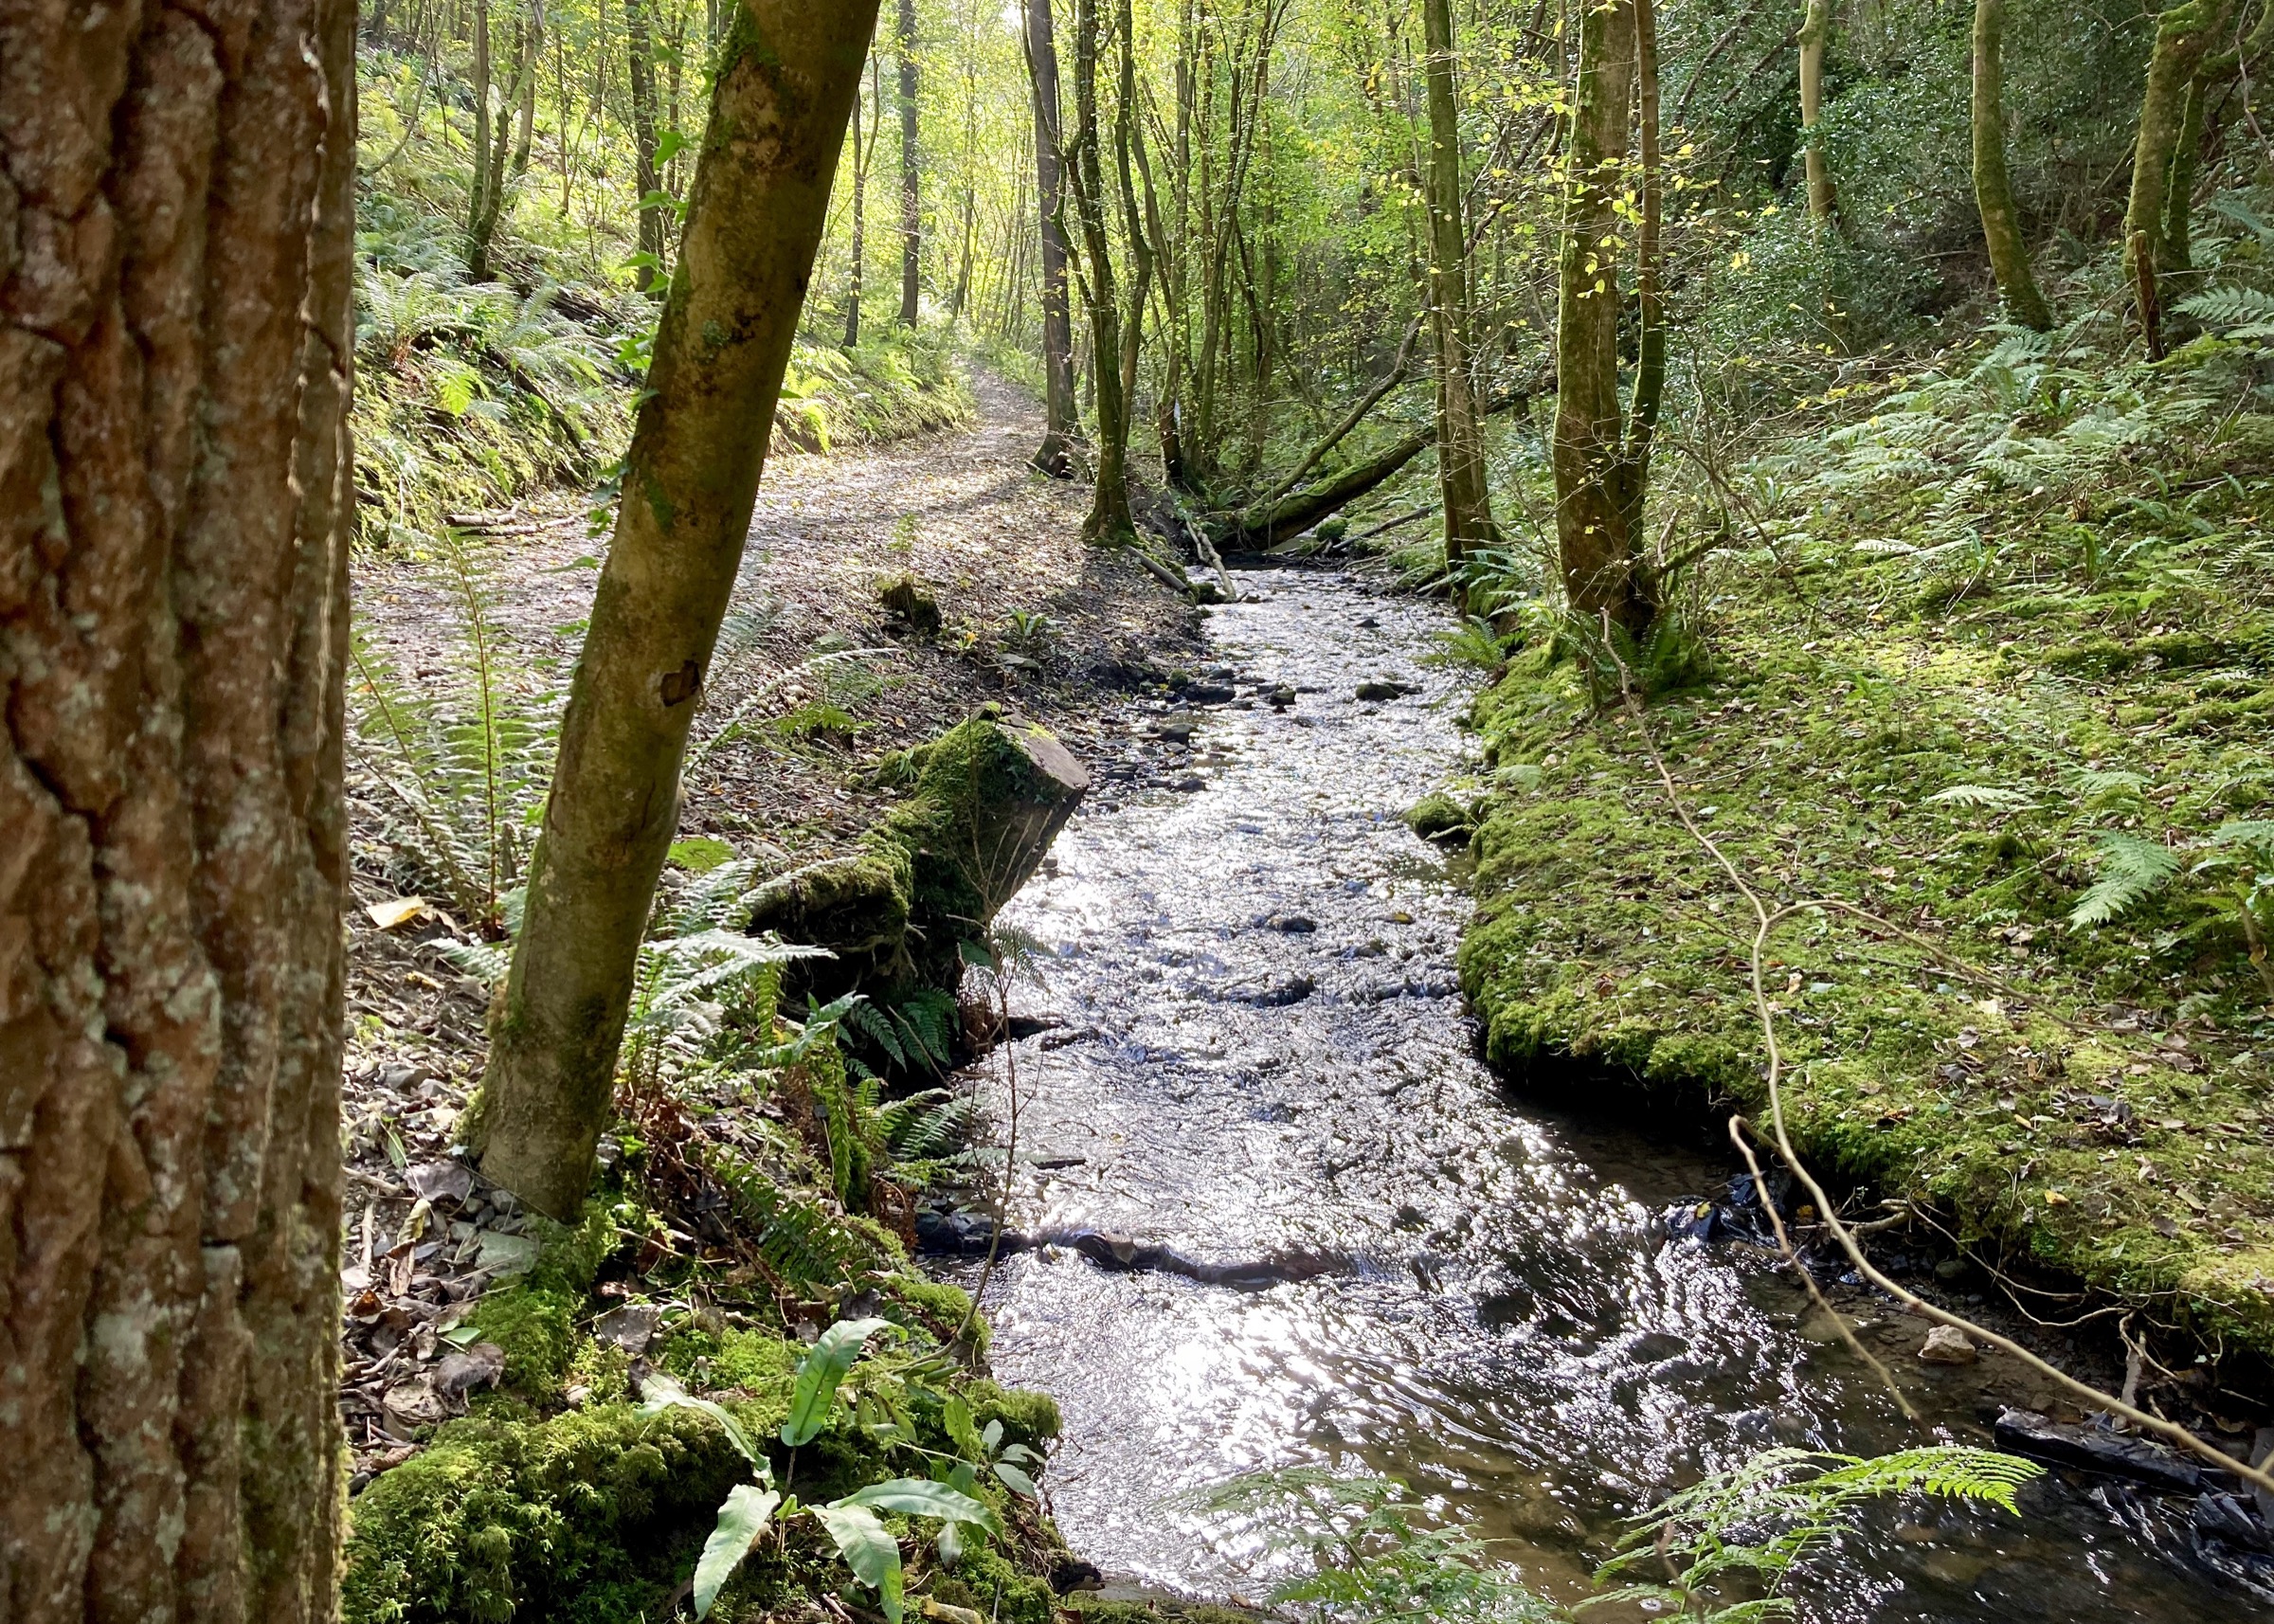 Rhyd y Gaseg, Clocaenog Forest, Wales